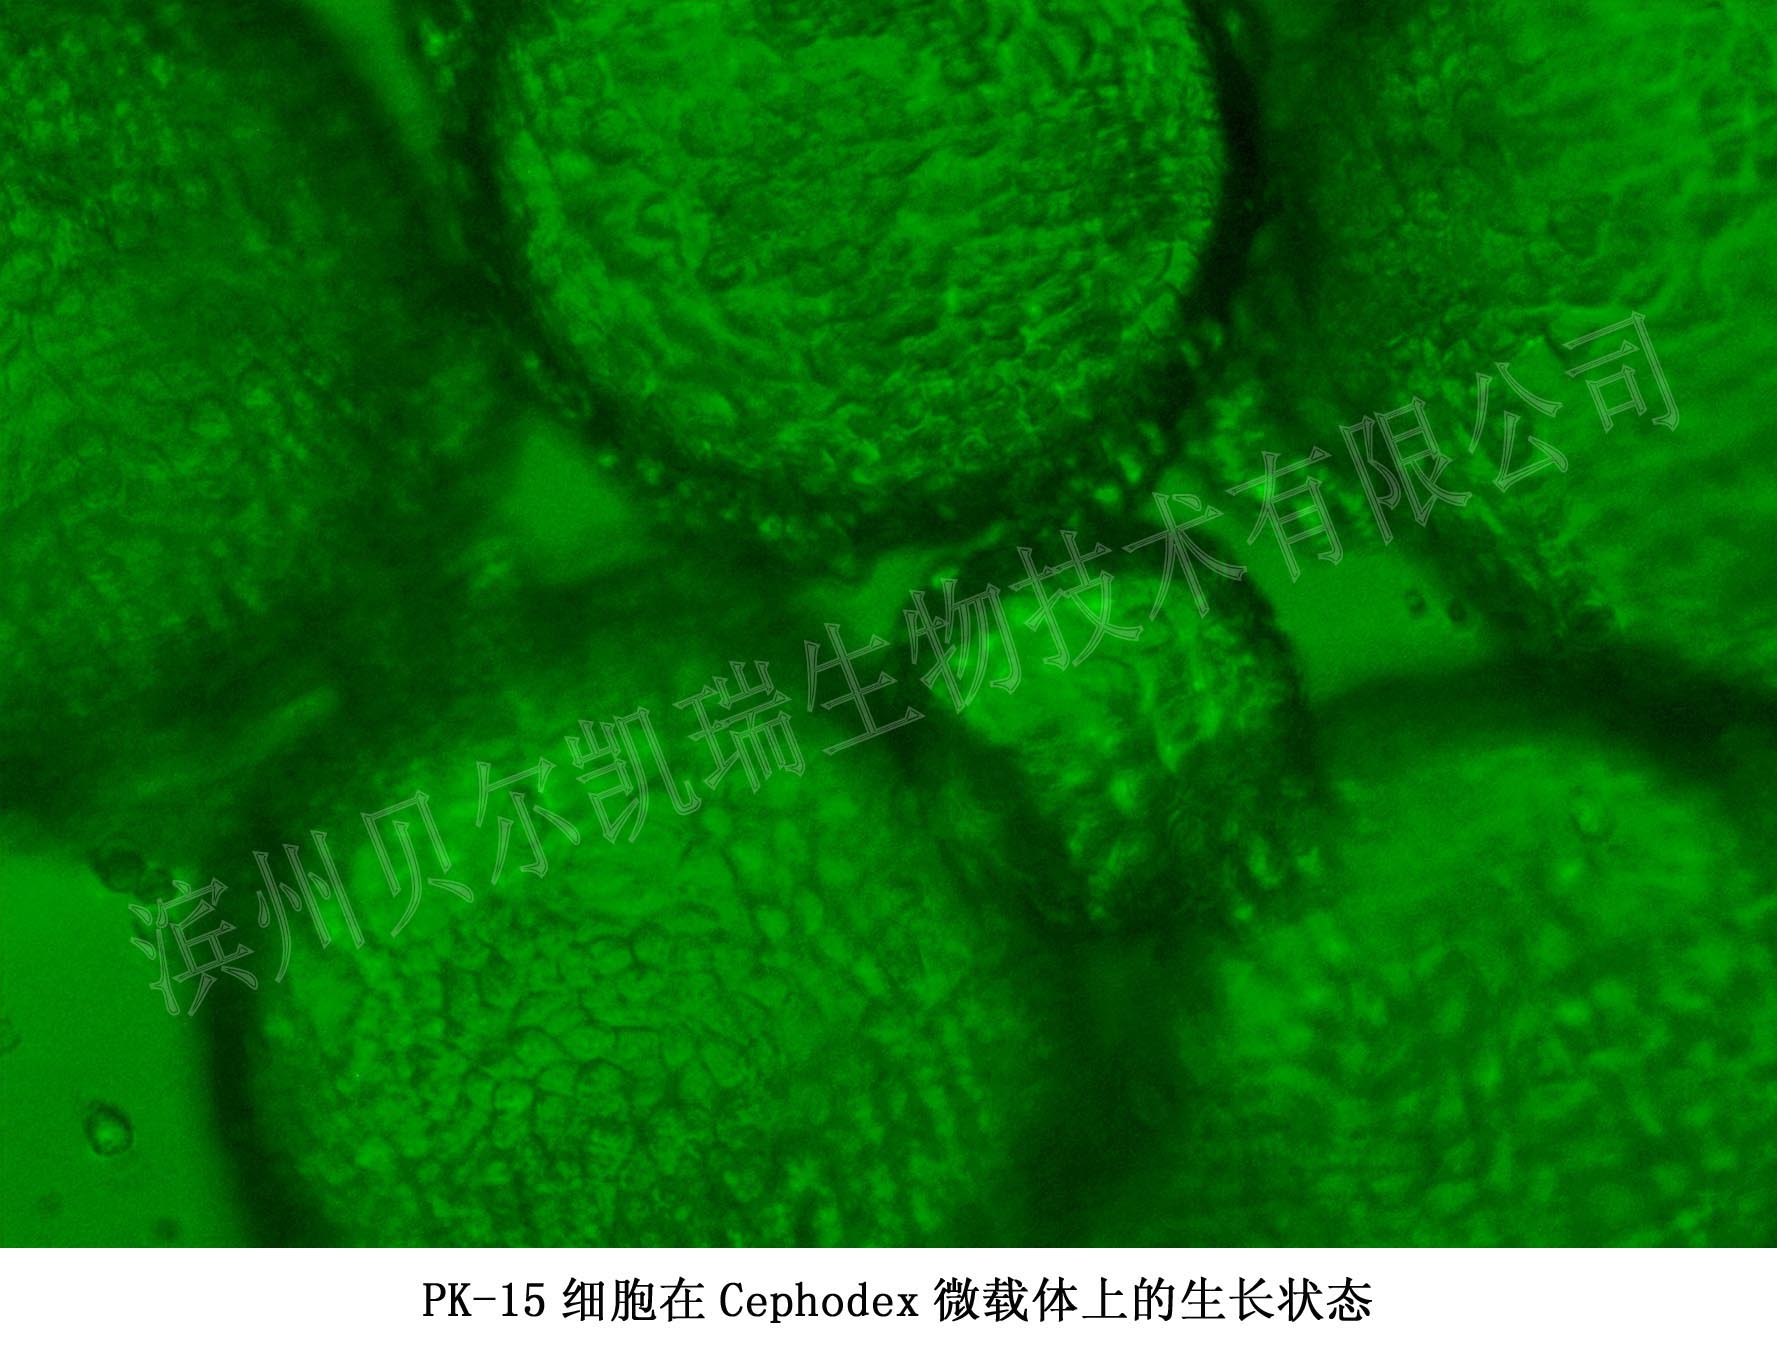 PK-15细胞在Cephodex微载体上的生长状态图片